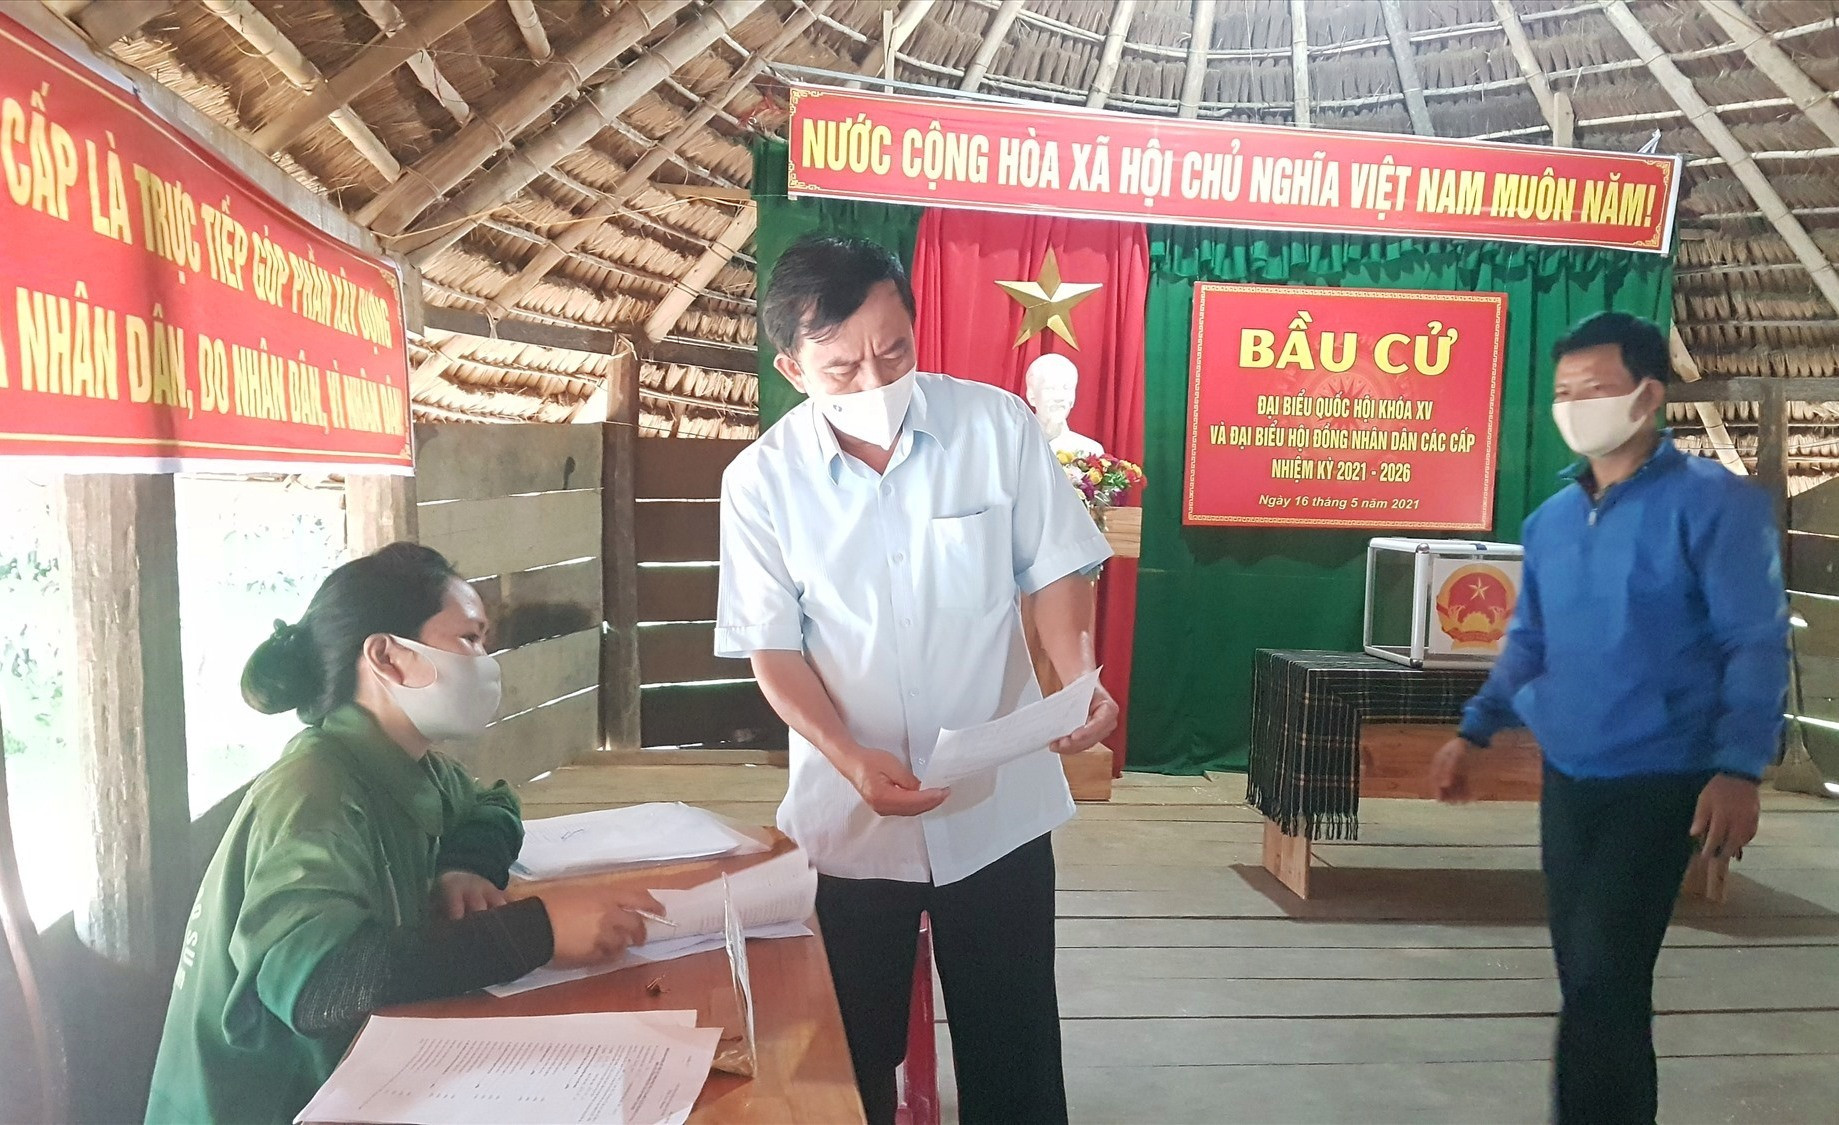 Phó Chủ tịch HĐND tỉnh Trần Xuân Vinh kiểm tra tại một điểm bỏ phiếu bầu cử. Ảnh: D.L